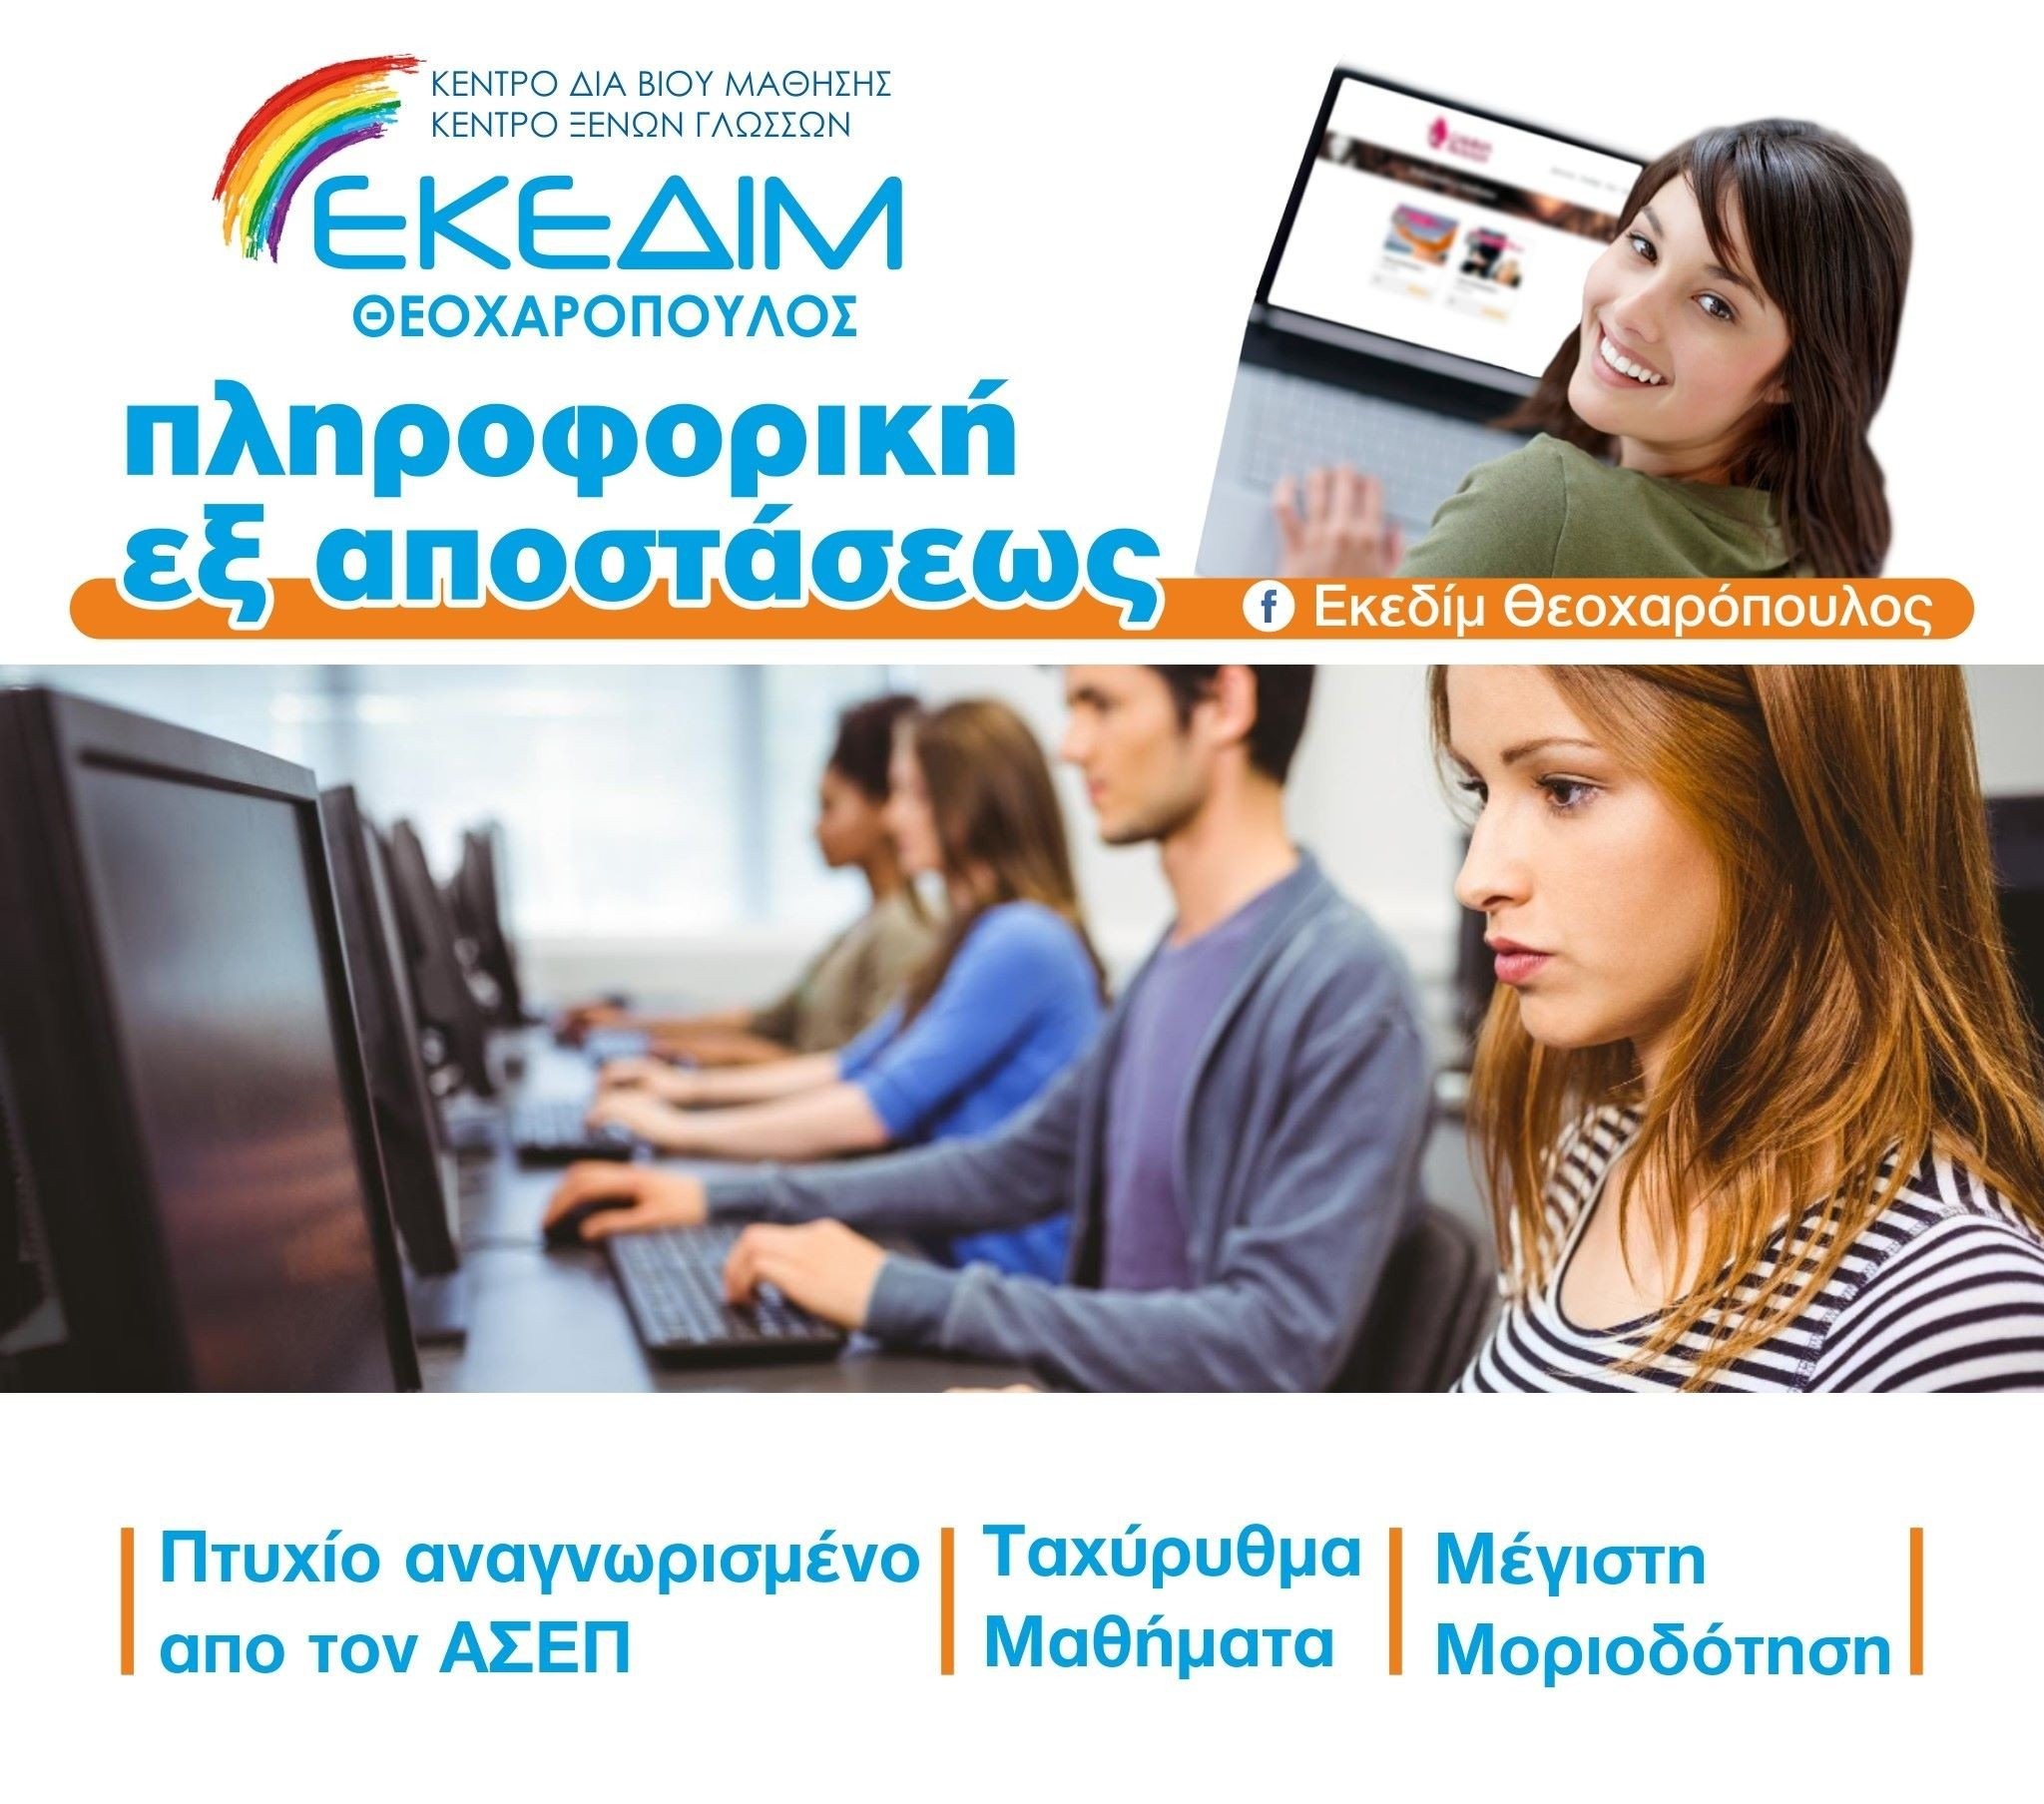 ΕΚΕΔΙΜ Θεοχαρόπουλος- Ταχύρυθμα μαθήματα πληροφορικής για απόκτηση πτυχίου αναγνωρισμένο από τον ΑΣΕΠ, μέσω του φορέα πιστοποίησης I-SKILLS